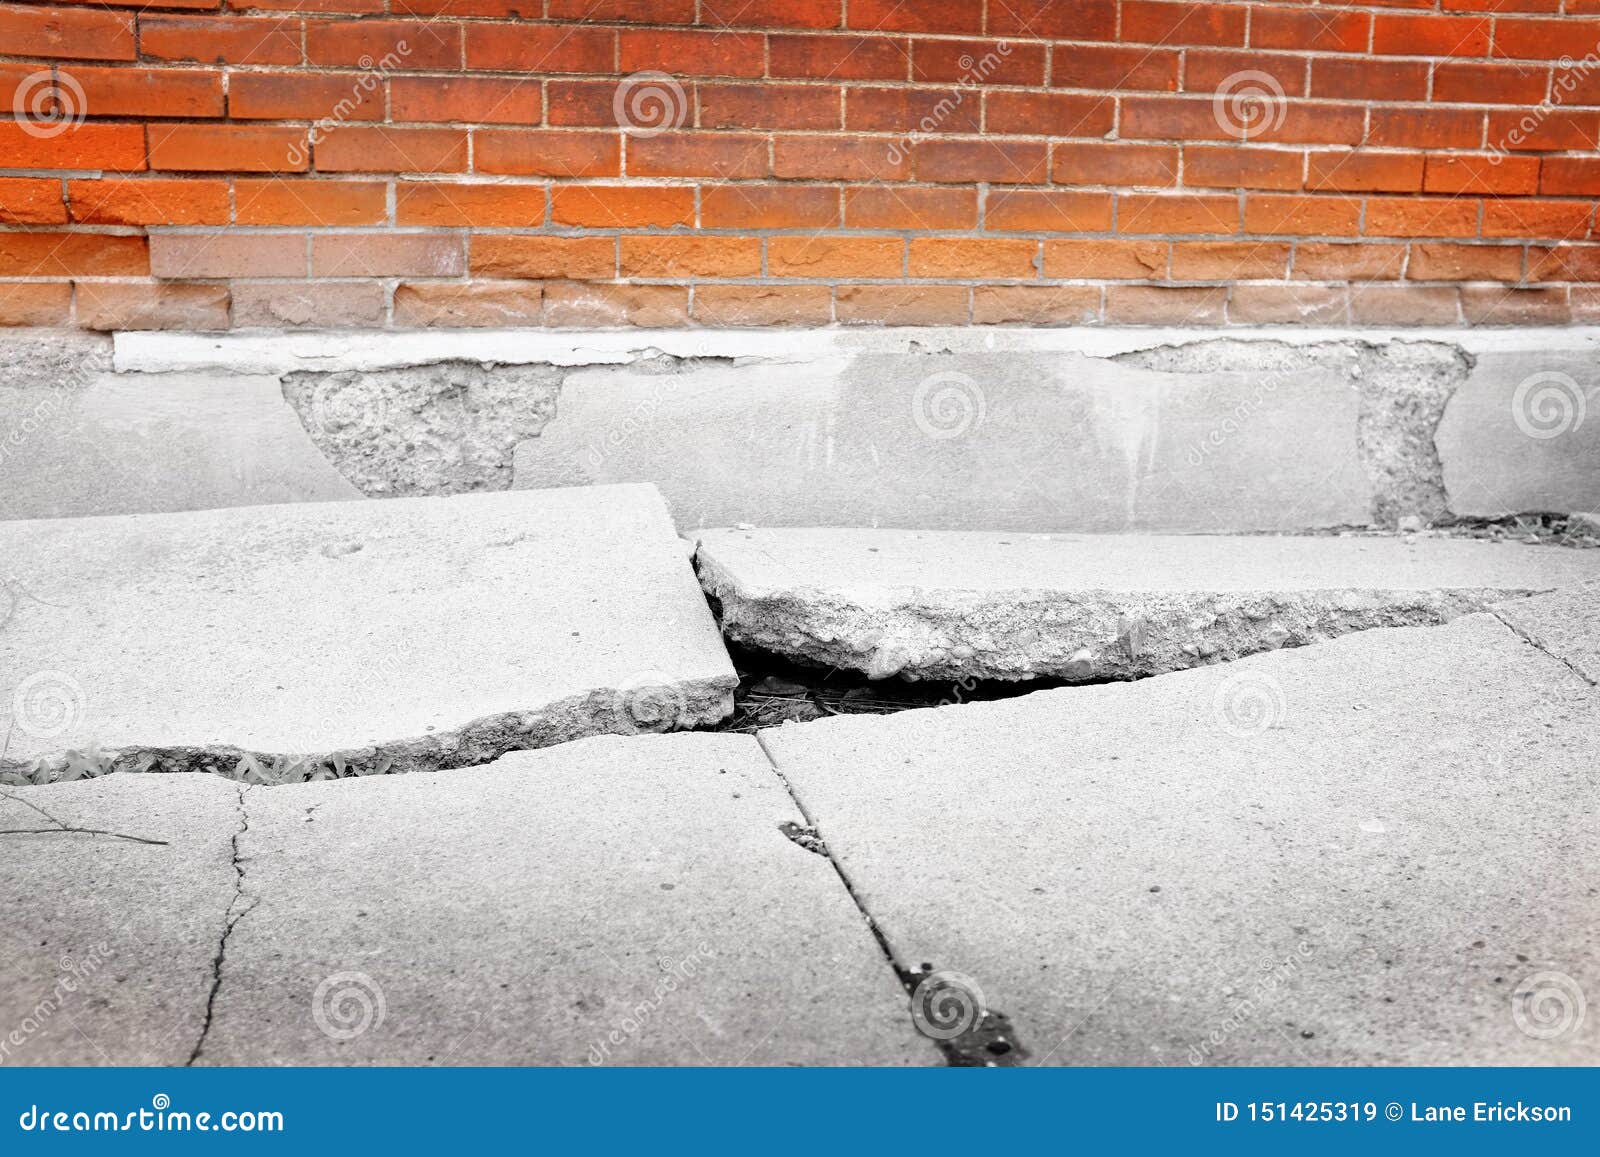 broken sidewalk concrete dangerous cracked